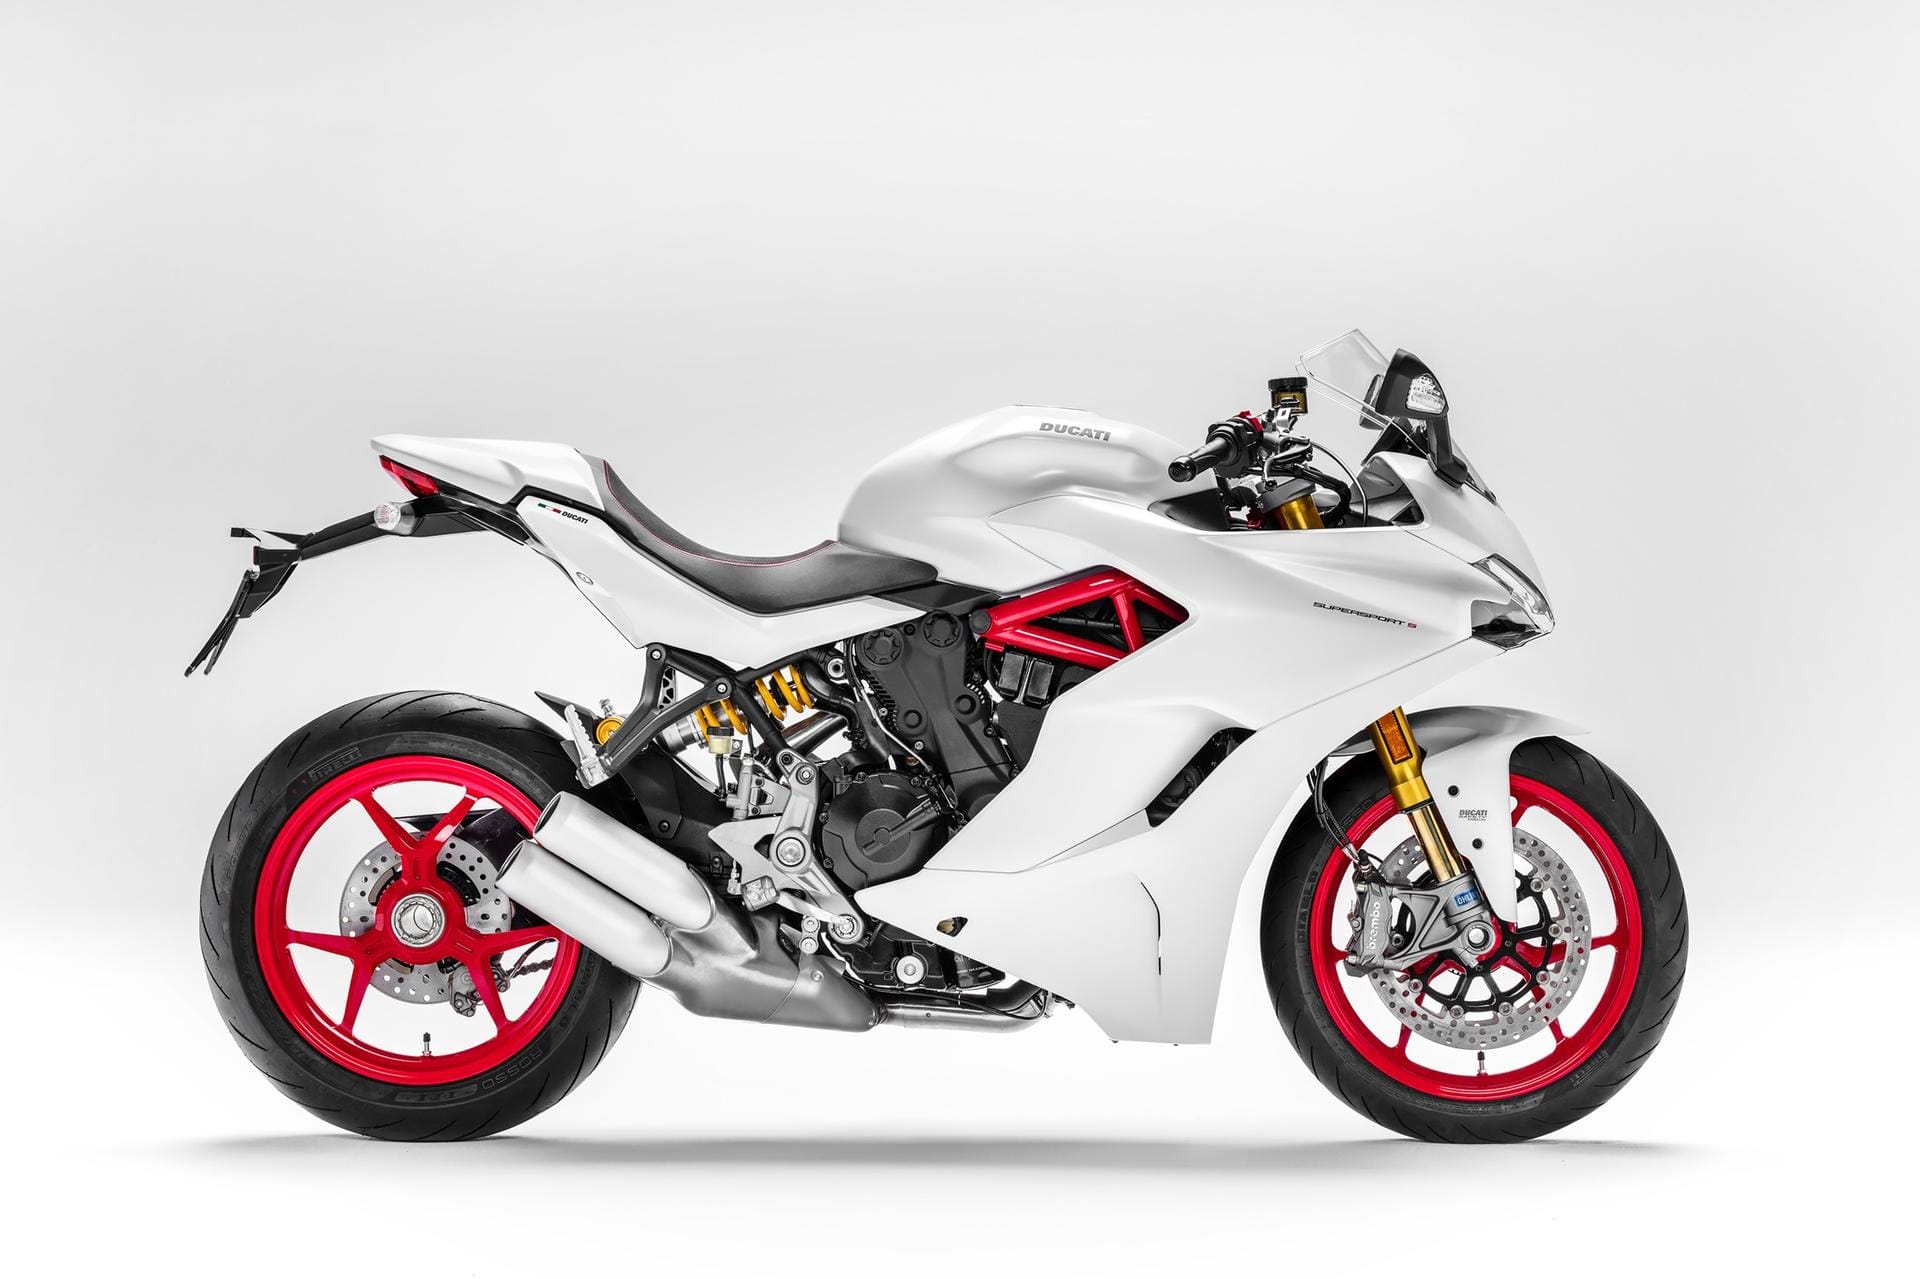 Neue Ducati SuperSport: Das Triebwerk weist 937 Kubikzentimeter Hubraum auf, aus denen eine Leistung von 113 PS resultiert.